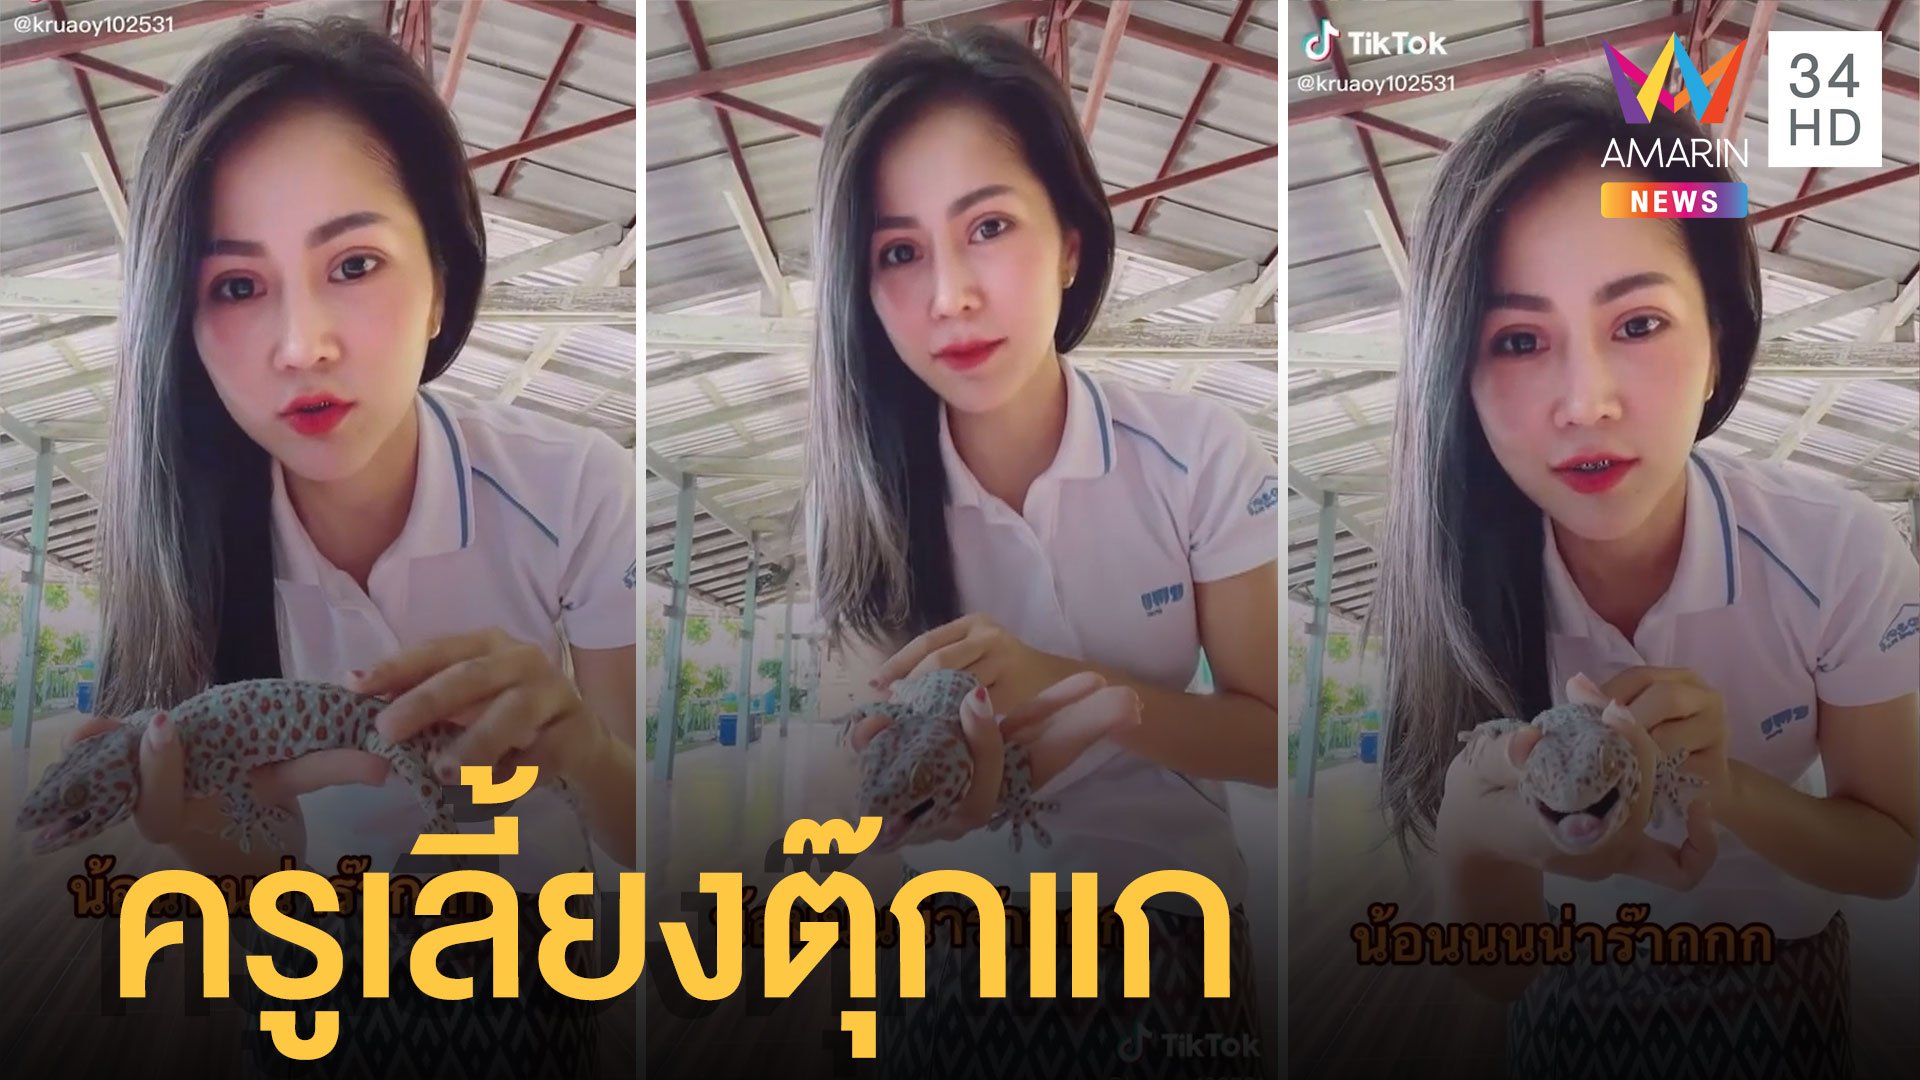 แกล้งเพื่อนตัวแย้กัดแก้ม ครูอ้อยครูภาษาไทยเลี้ยงตุ๊กแกยิ้มอ่อนให้ด้วย | ข่าวอรุณอมรินทร์ | 2 ก.ค. 65 | AMARIN TVHD34